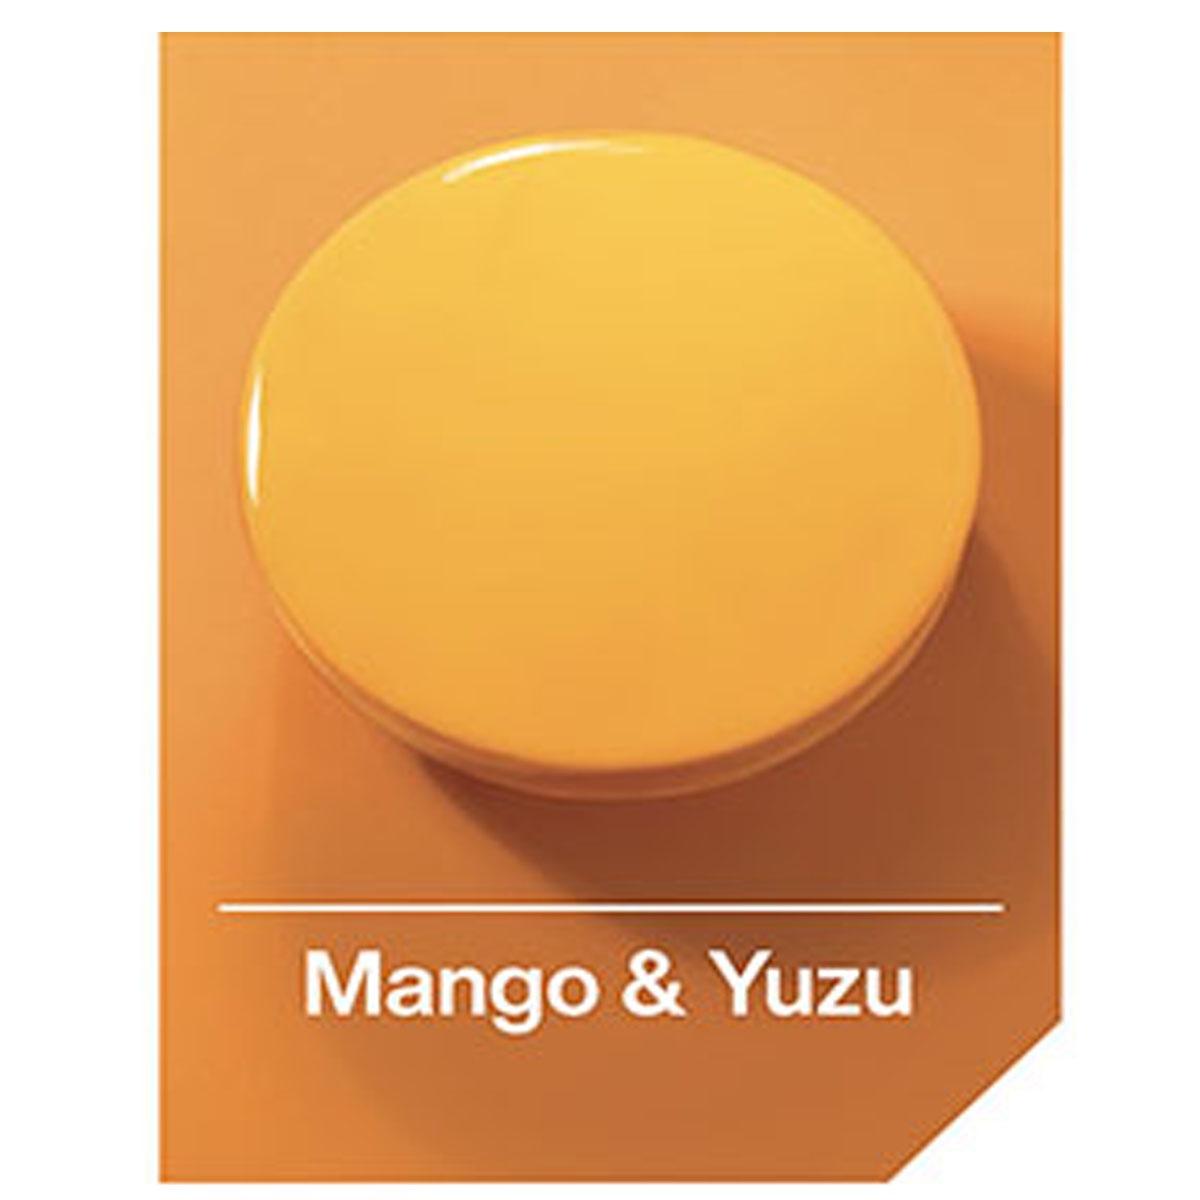 Glassa mango-yuzu kg 3,3 - comprital